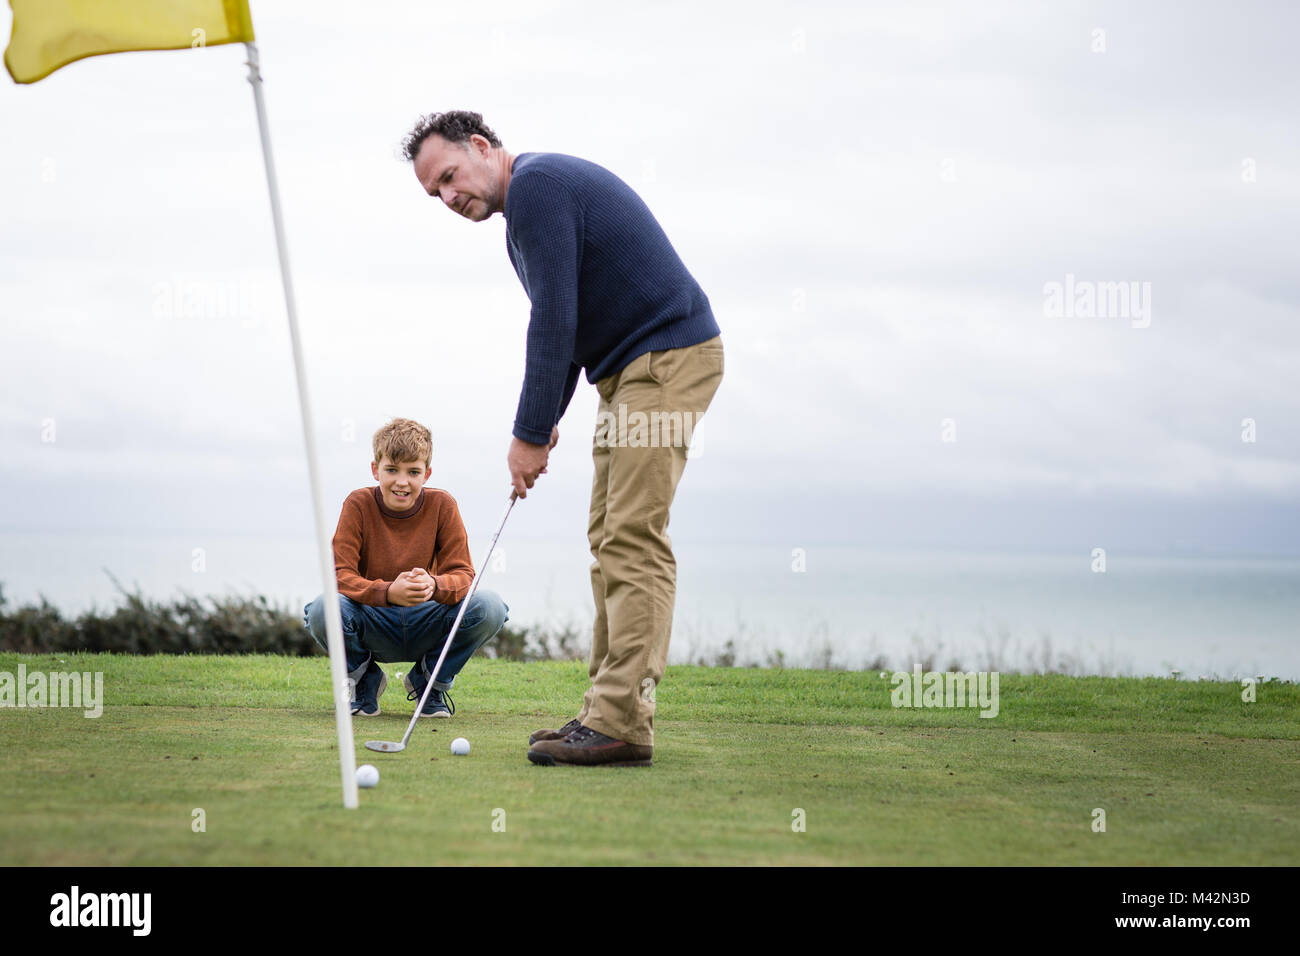 Son watching père jouer au golf Banque D'Images